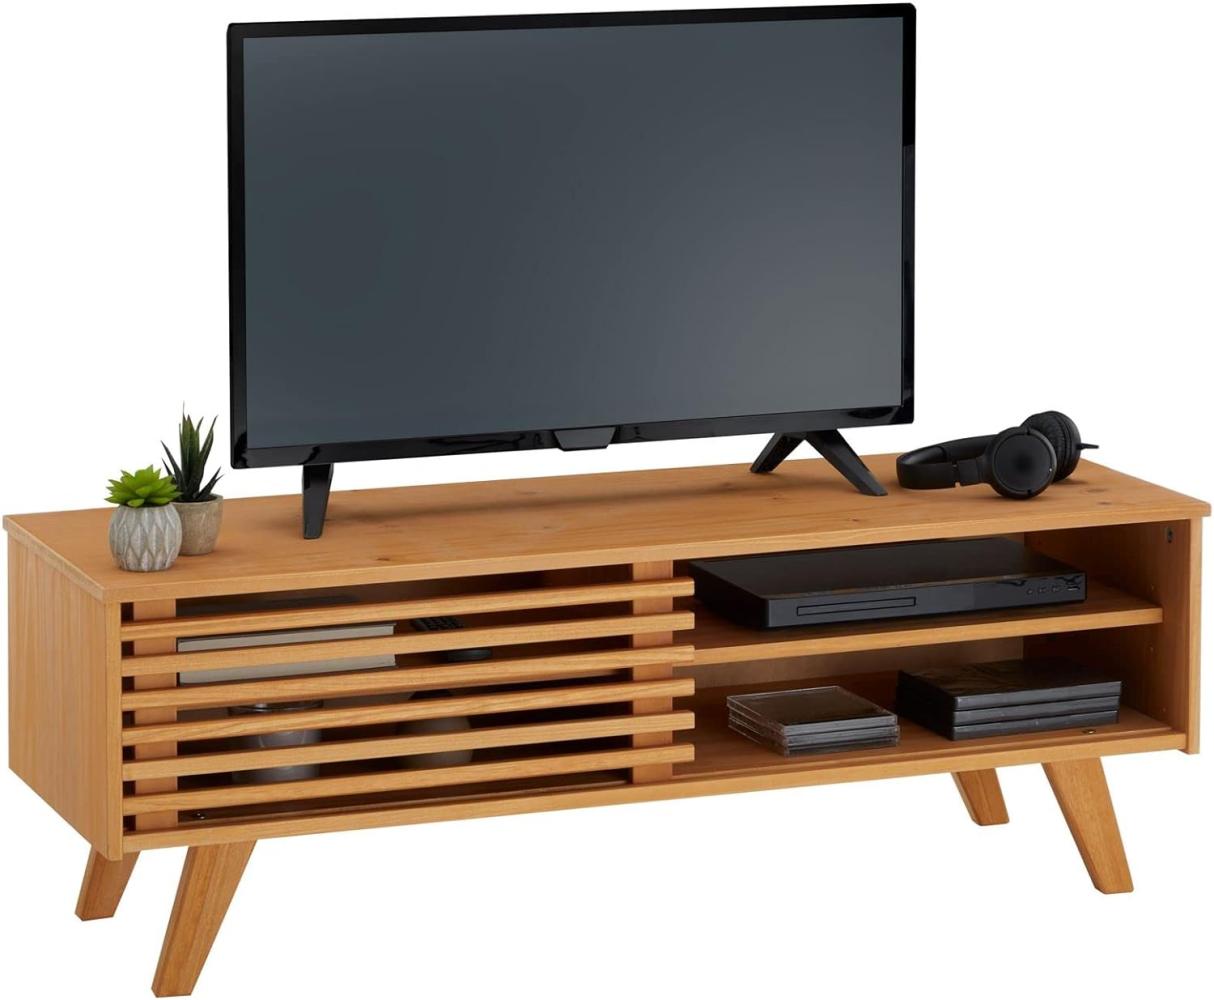 IDIMEX Lowboard Sean, schöner Fernsehtisch mit 2 Fächer, praktisches TV Möbel mit Schiebetür, reizendes Sideboard aus massiver Kiefer gebeizt Bild 1